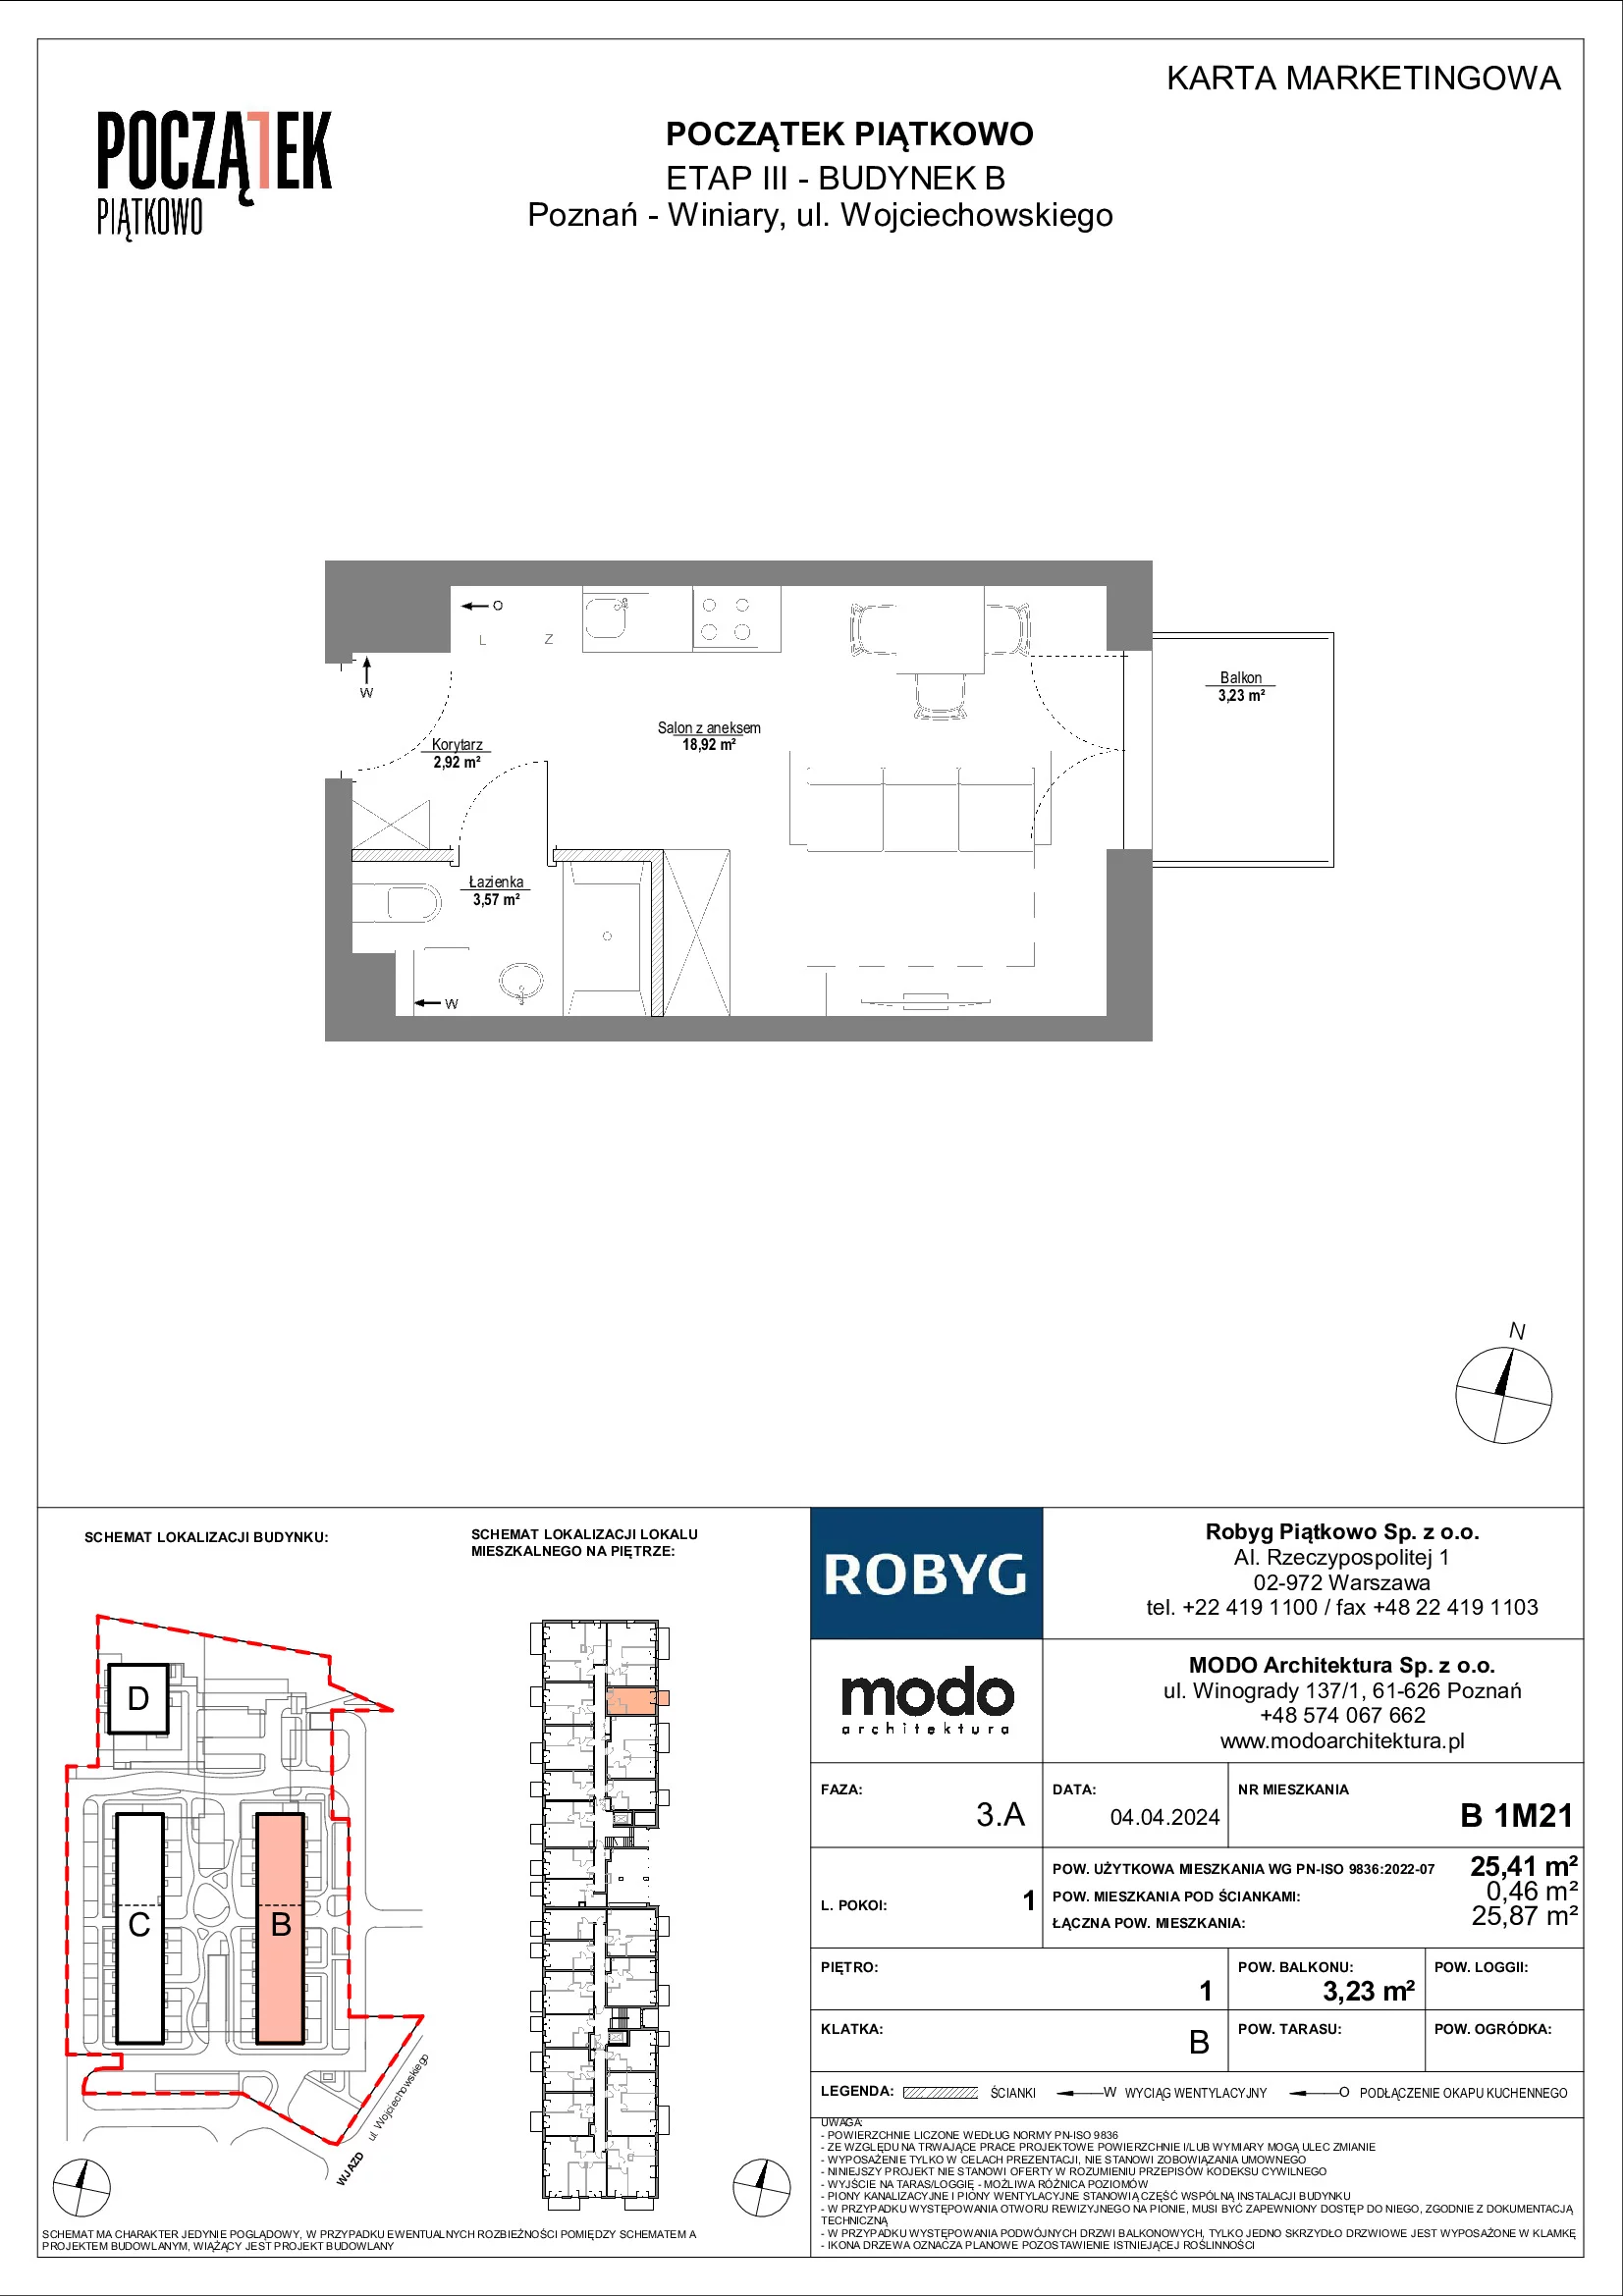 Mieszkanie 25,41 m², piętro 1, oferta nr B.1M21, Początek Piątkowo, Poznań, Piątkowo, ul. Wojciechowskiego